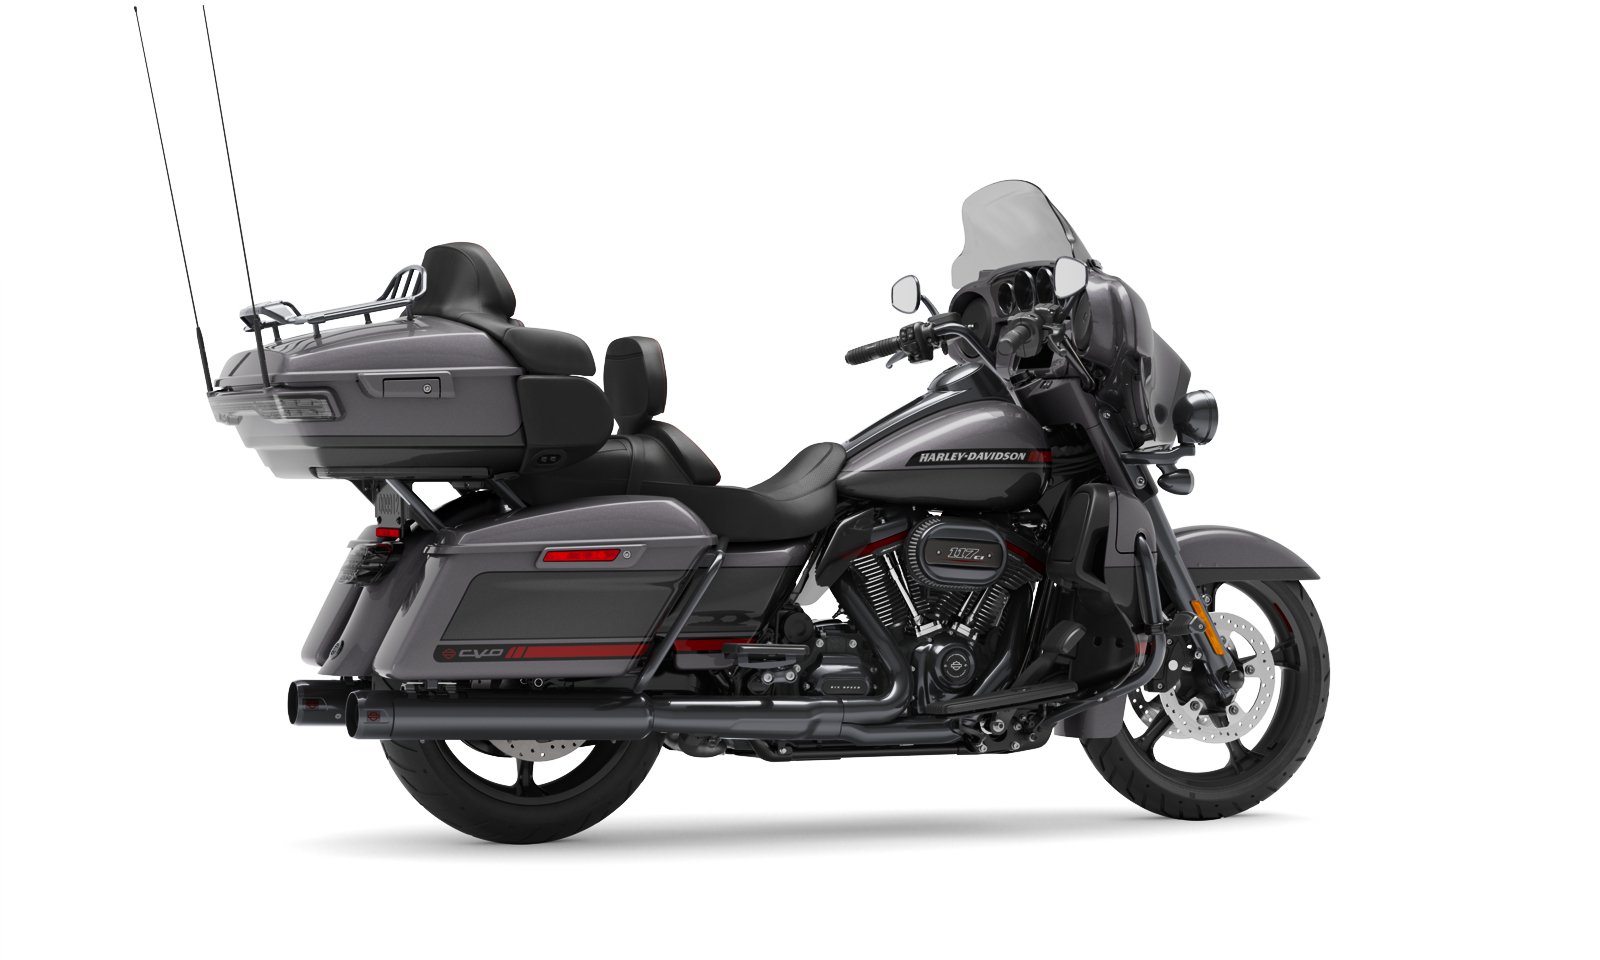 2020 Cvo Limited Motorcycle Harley Davidson Osterreich